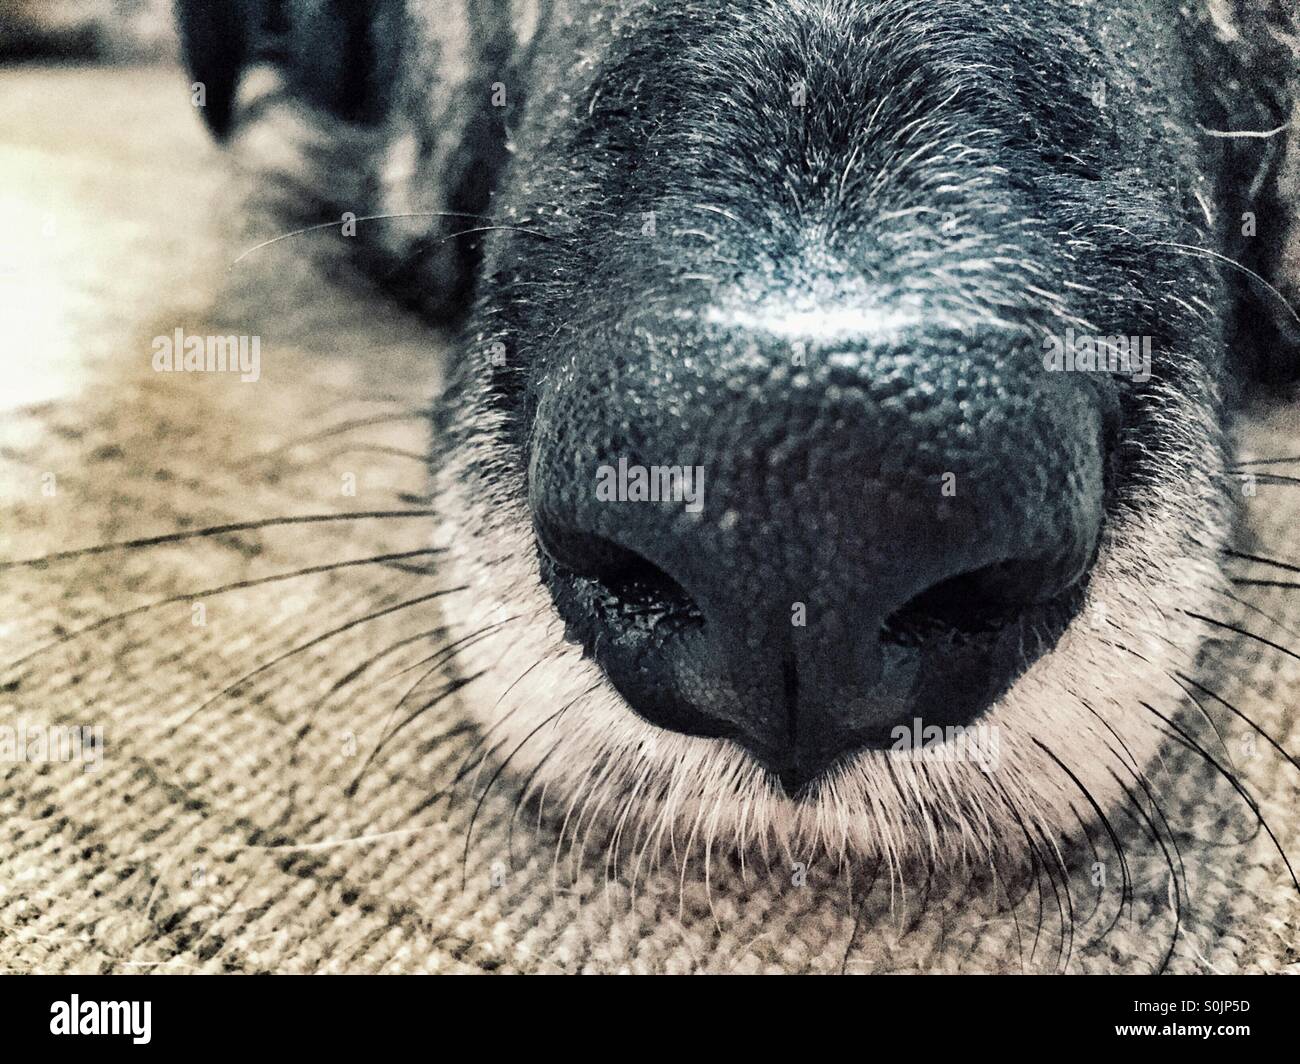 Hund Nase und Schnurrhaare Stockfotografie - Alamy